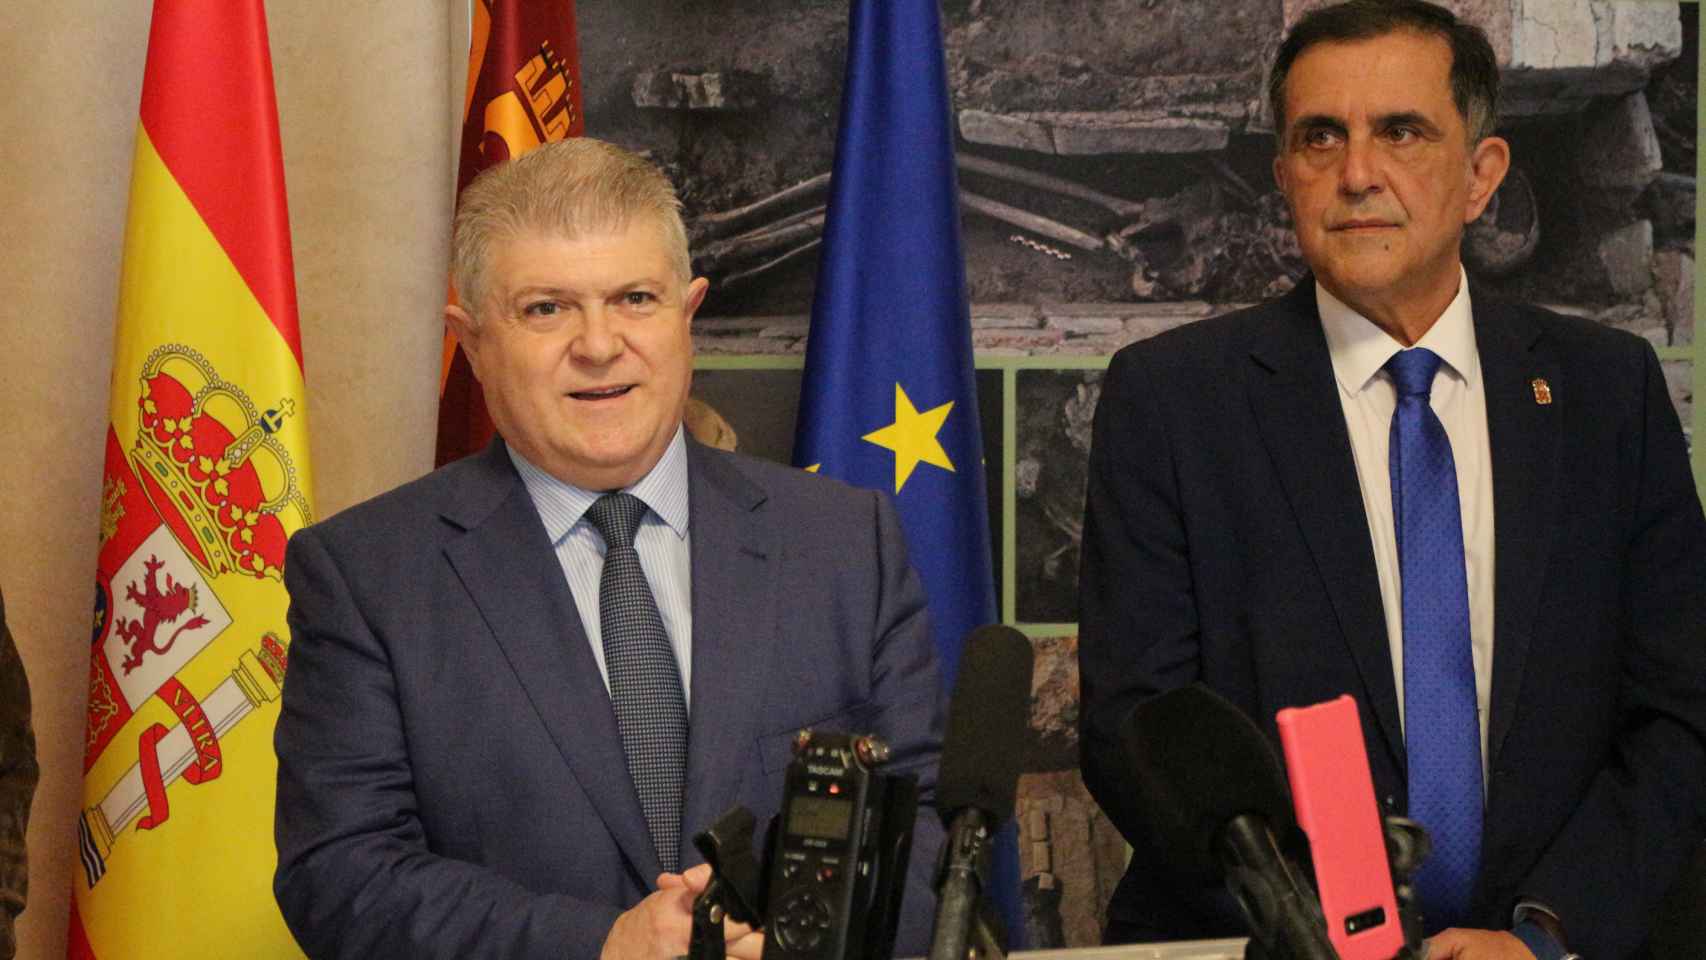 El delegado del Gobierno en Murcia y secretario general de los socialistas murcianos, José Vélez, junto al alcalde de la capital, José Antonio Serrano.